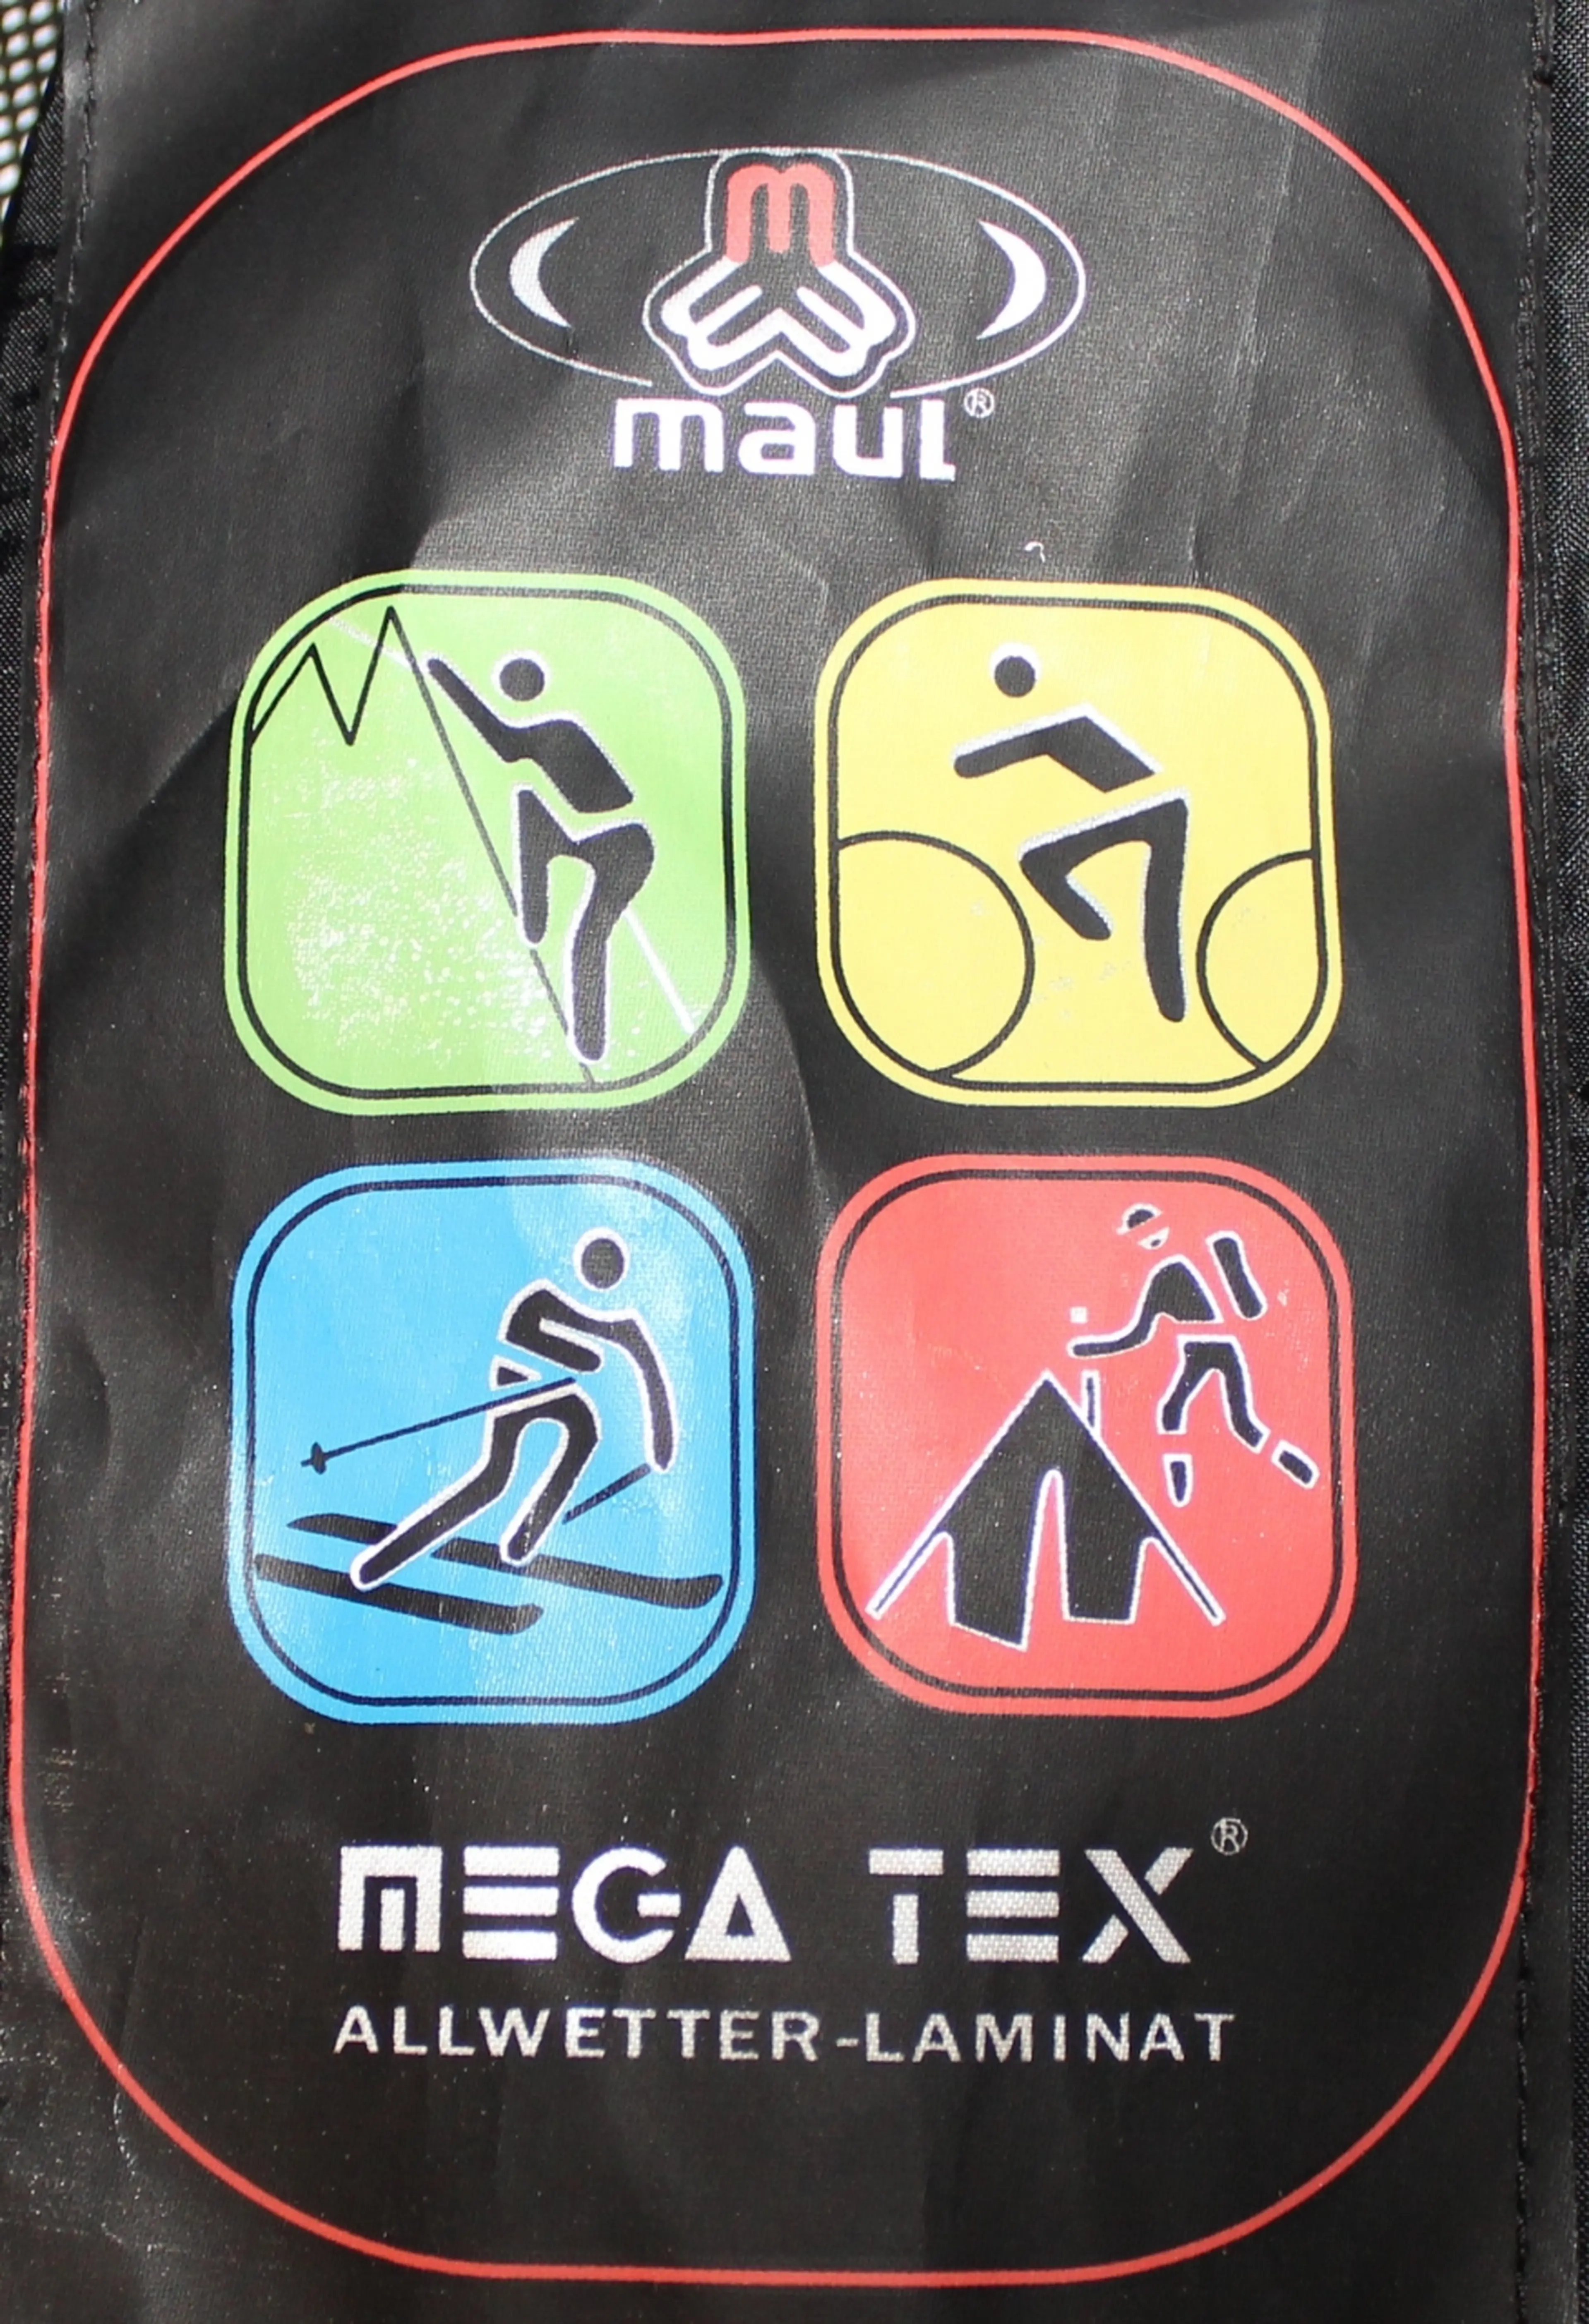 Image Geaca Maui, membrana Mega Tex, barbati, marimea 54(XXL)